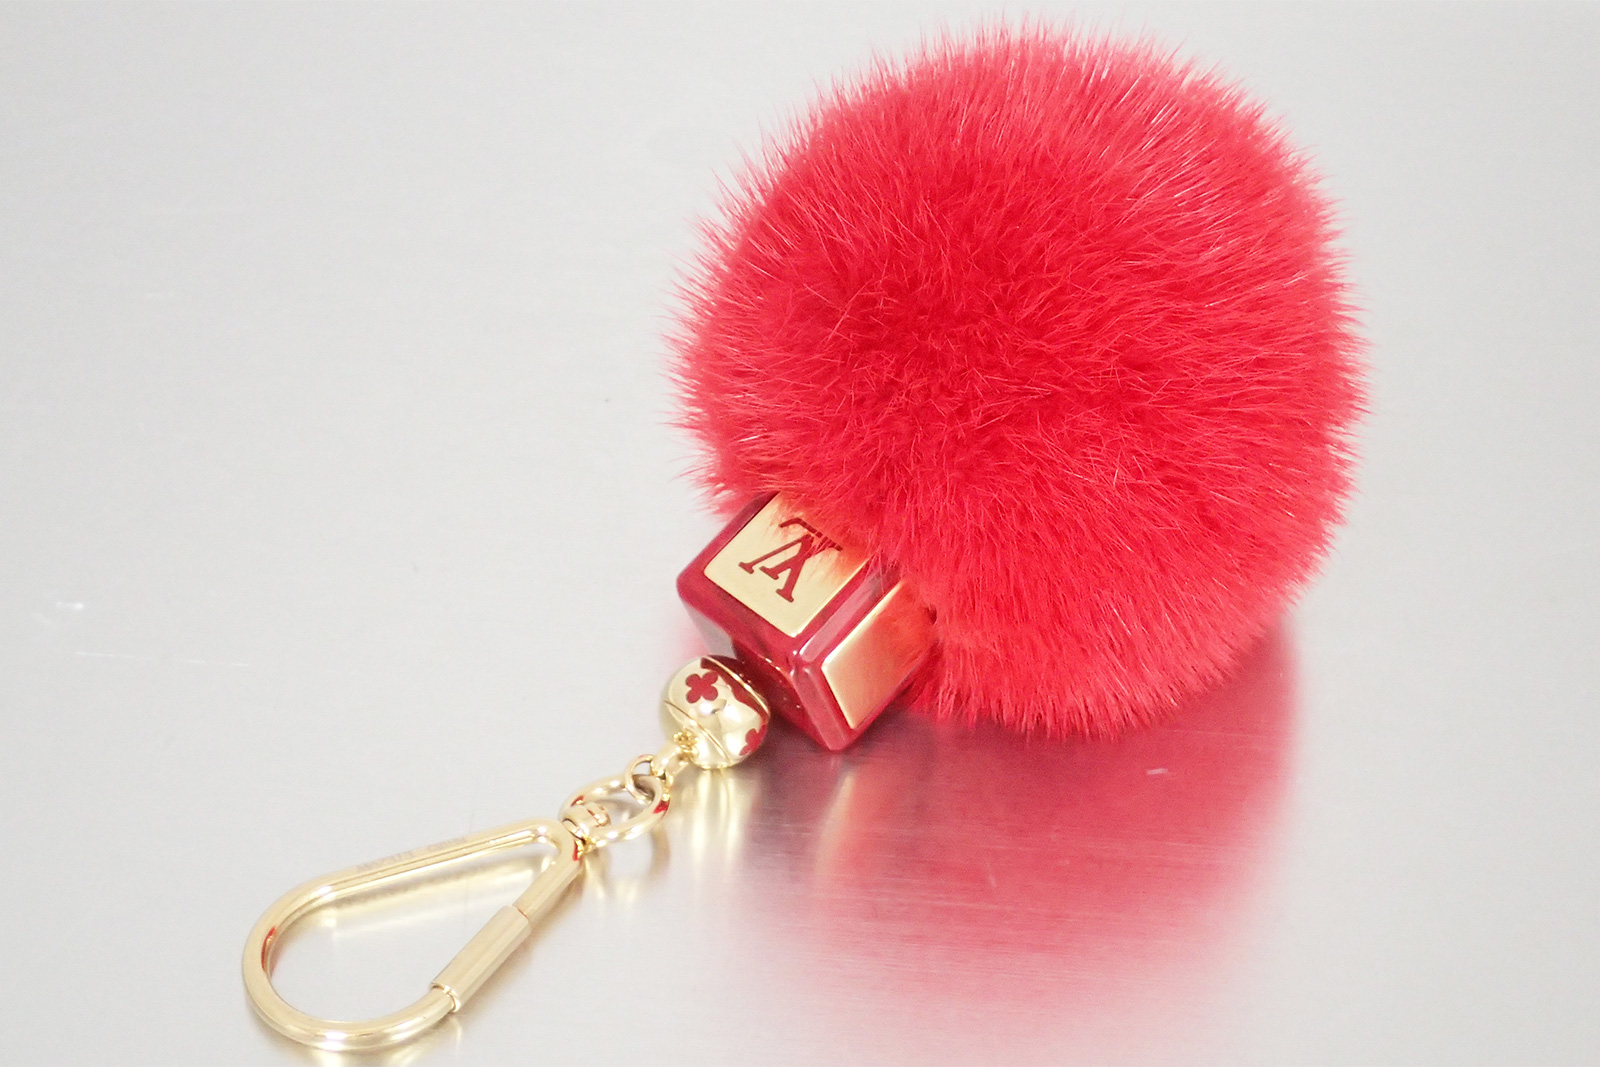 Auth Louis Vuitton Monogram Fluffy Bag Charm Fur Red/Gold w/ box - e15507 | eBay